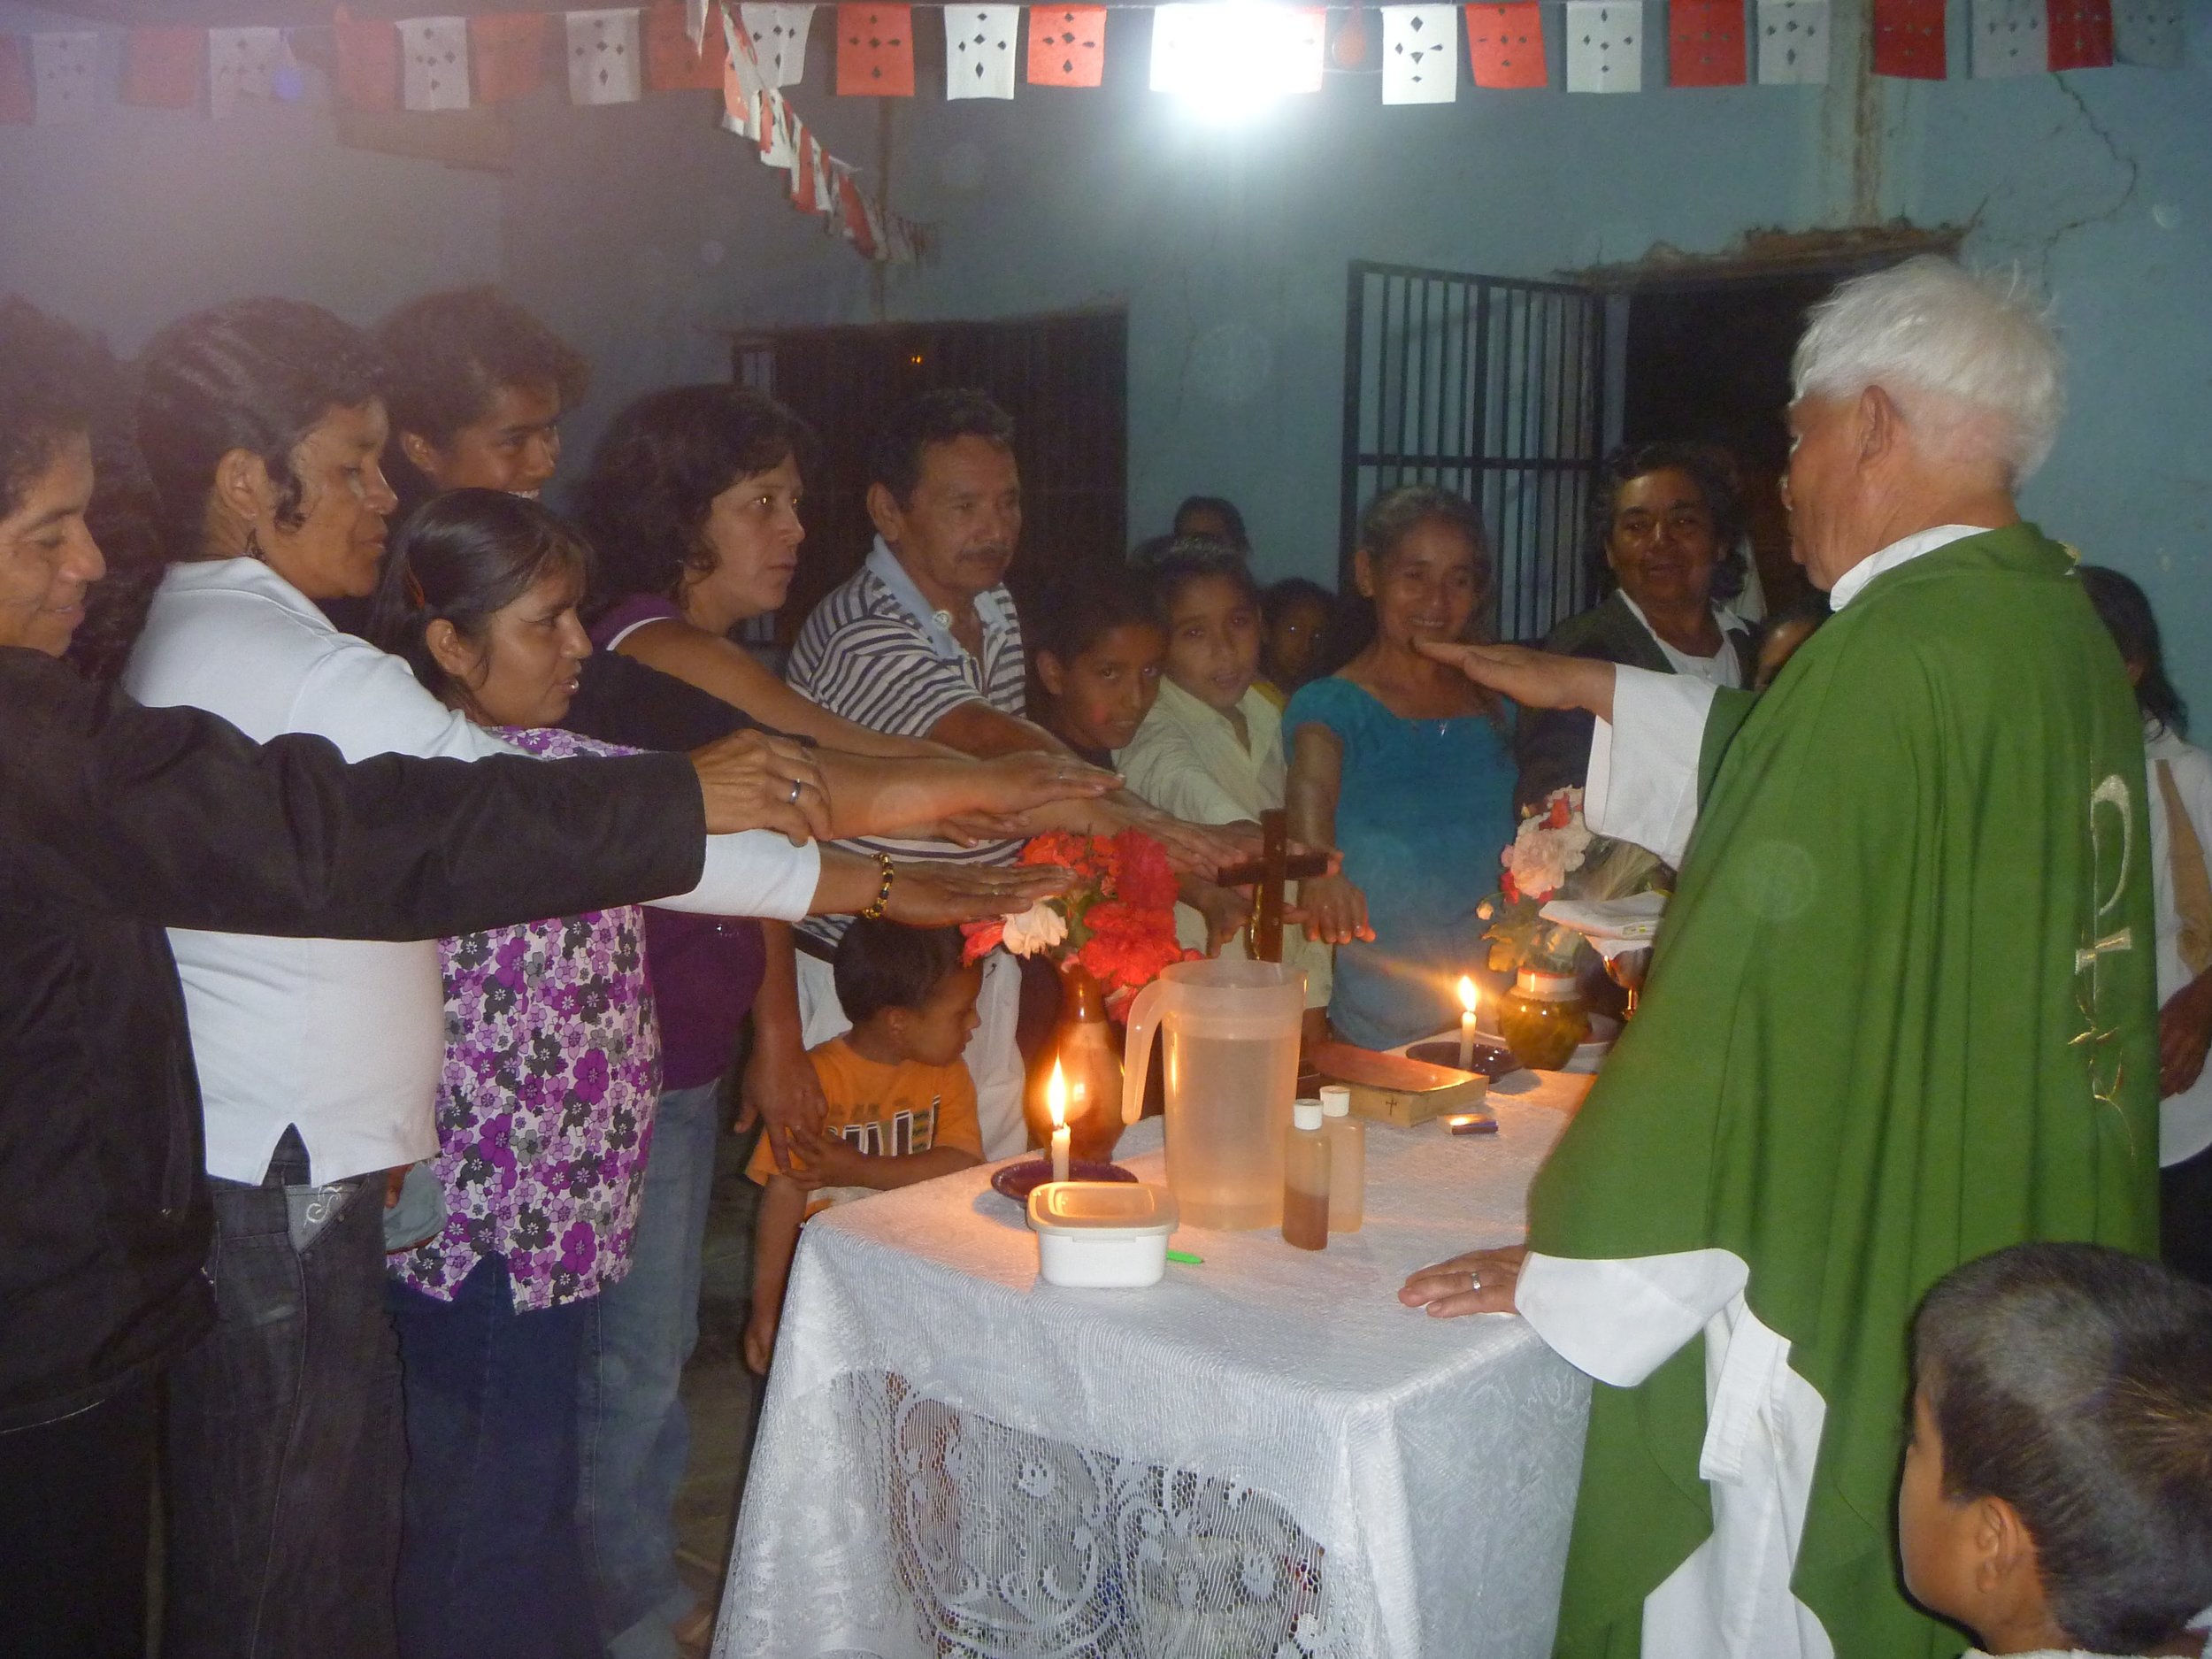 Missions in Peru